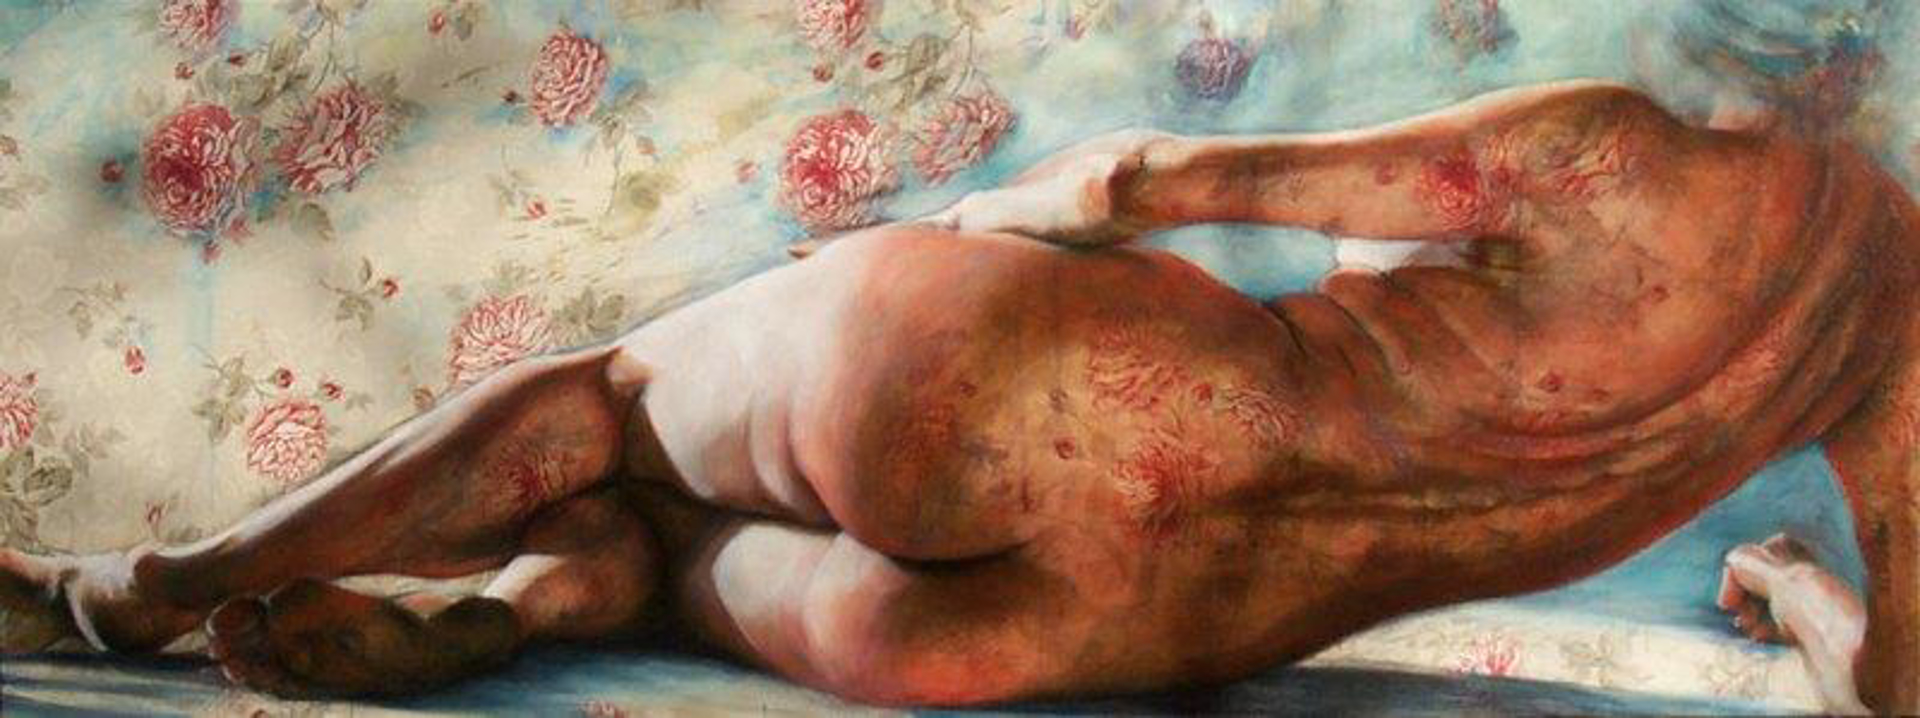 Bed of Roses by Lisa VanderHill